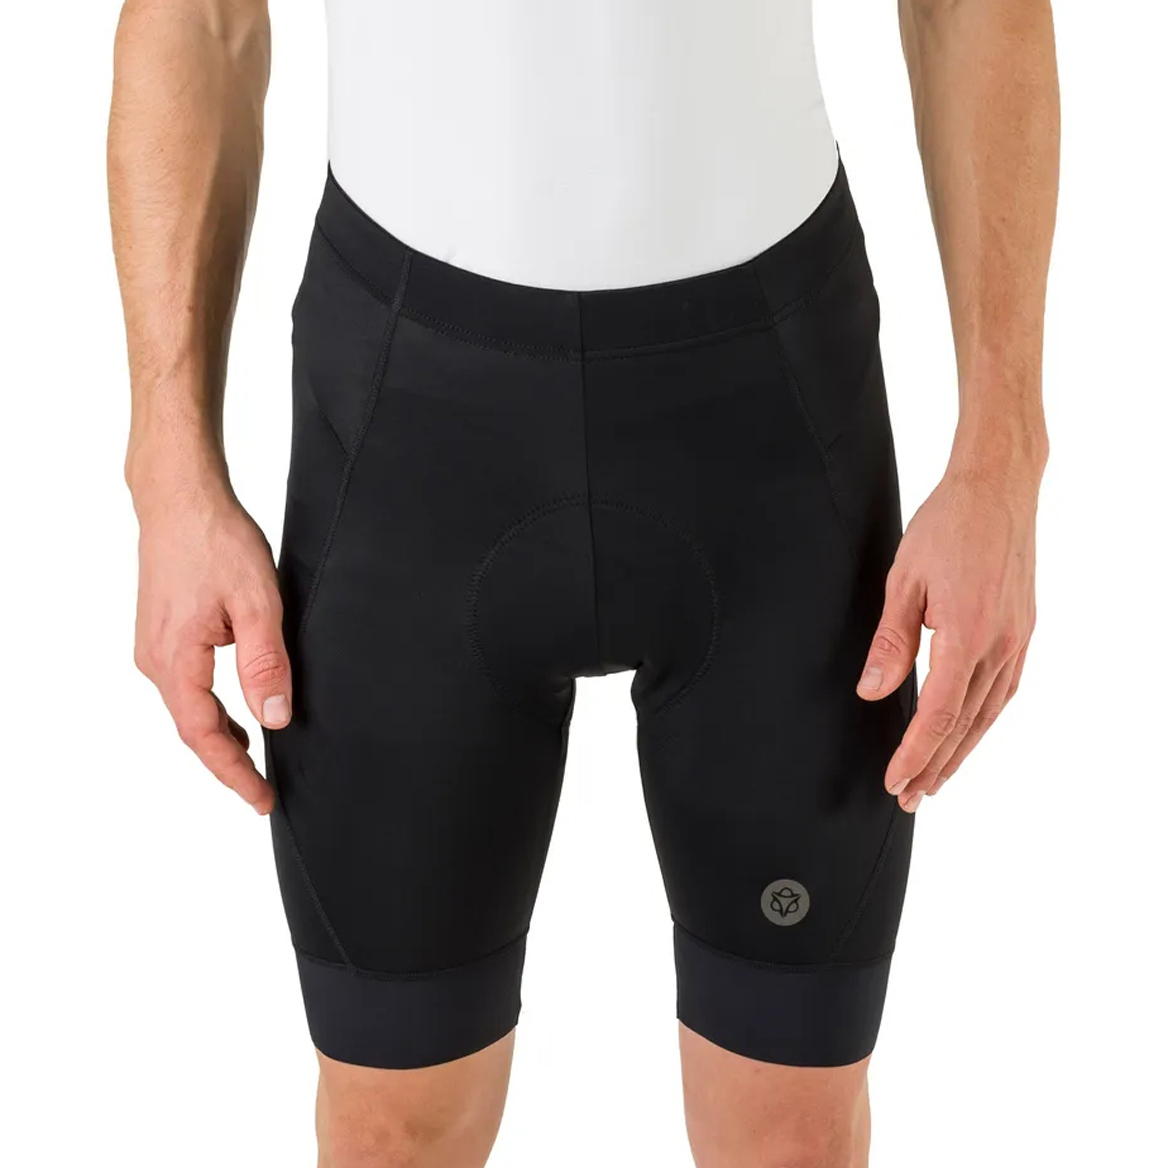 Produktbild von AGU Essential Prime Shorts II - schwarz